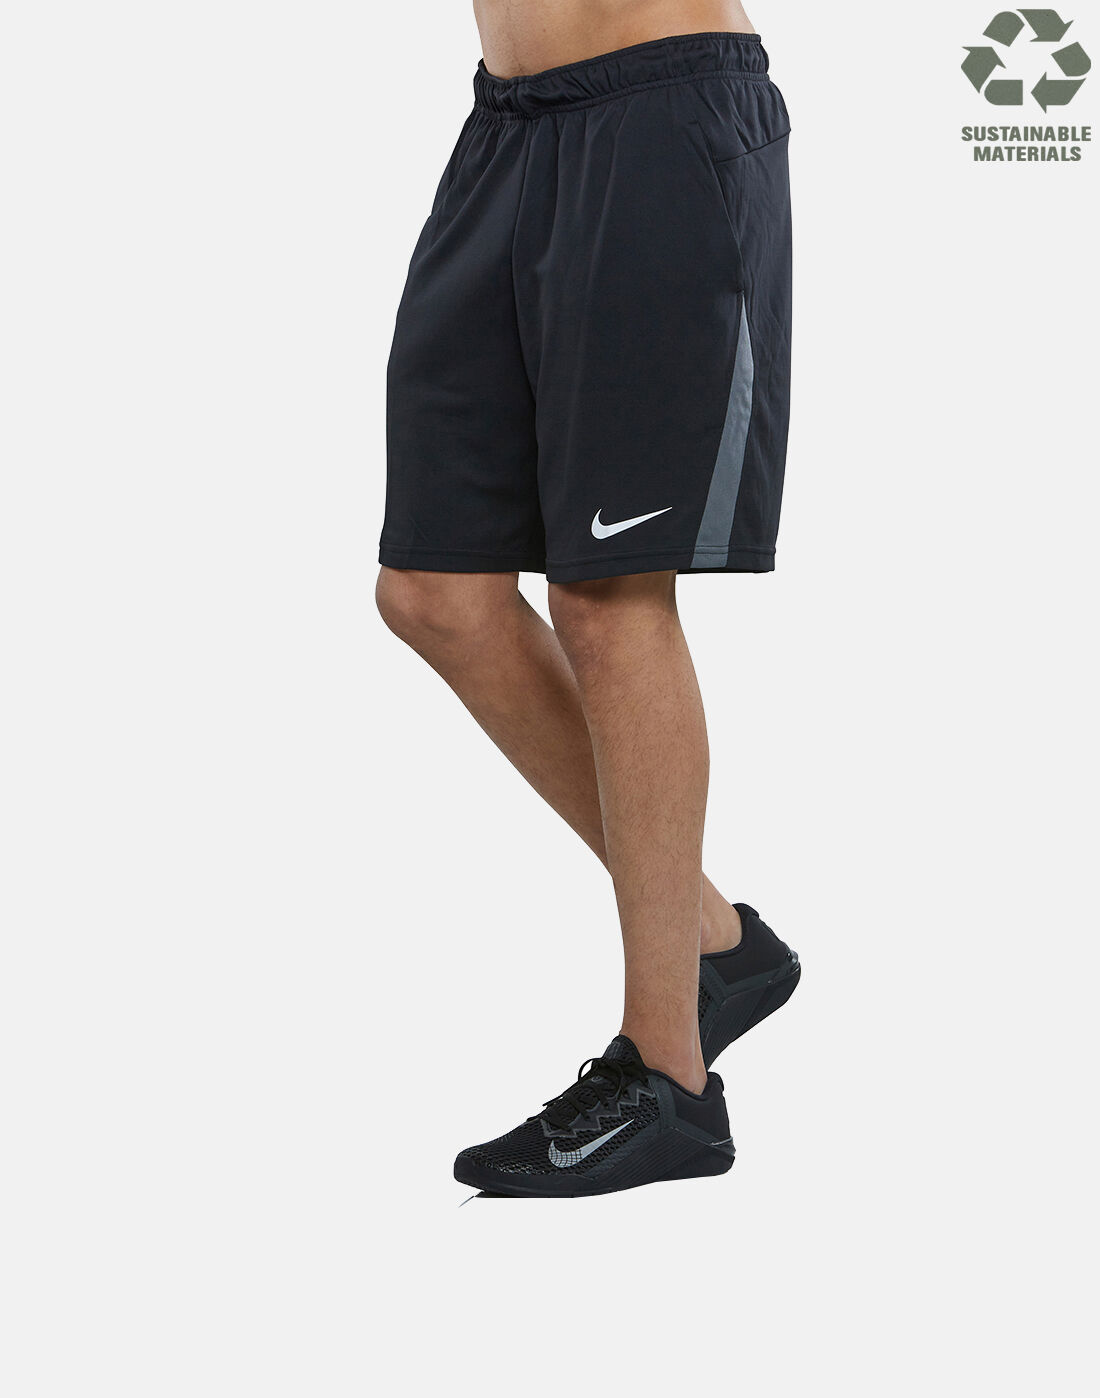 nike men's shorts sizing